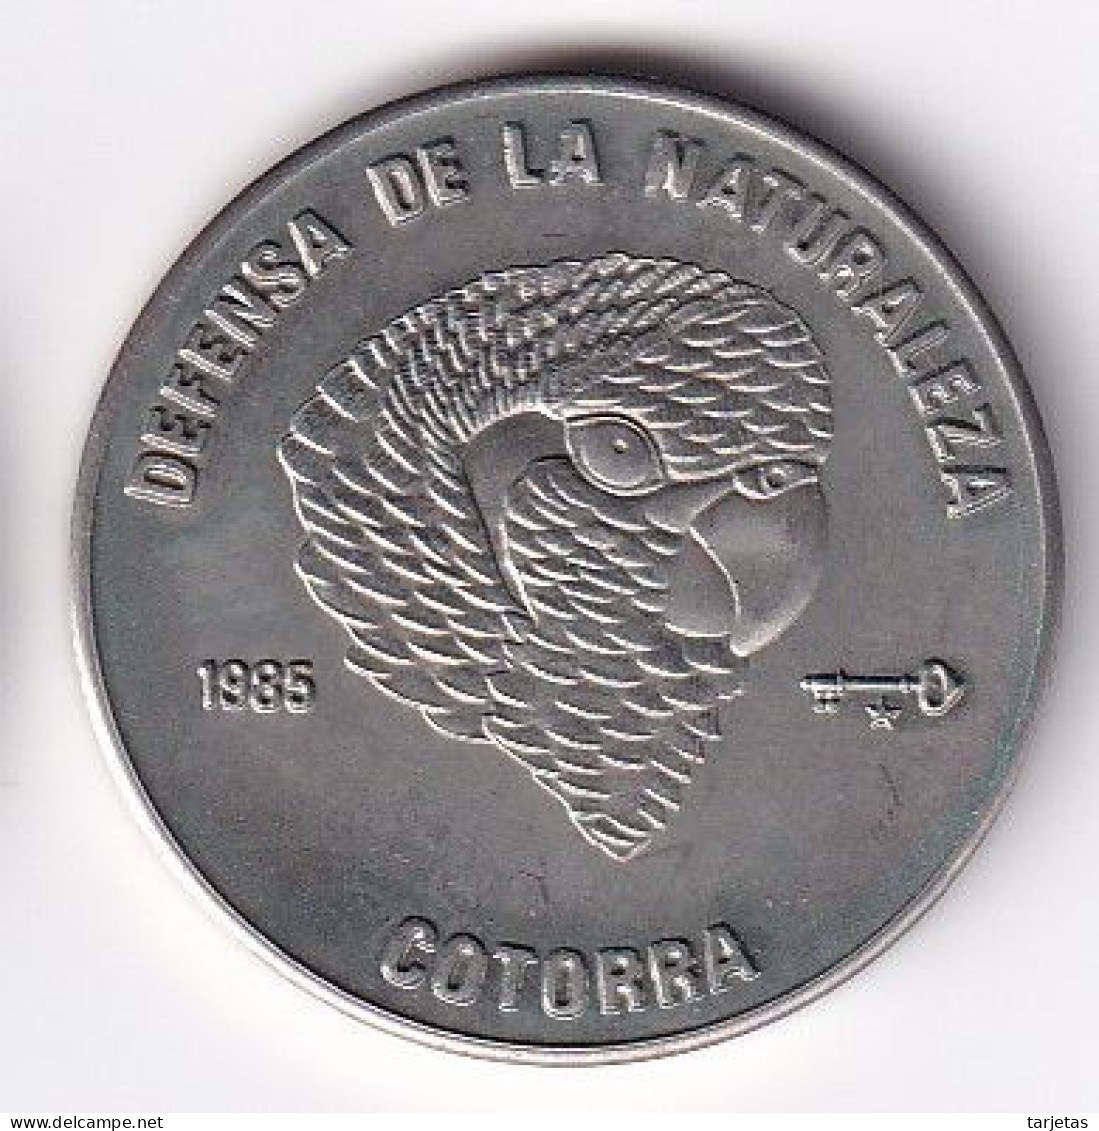 MONEDA DE CUBA DE 1 PESO DEL AÑO 1985 DE LA COTORRA (COIN)  (NUEVA - UNC) - Cuba